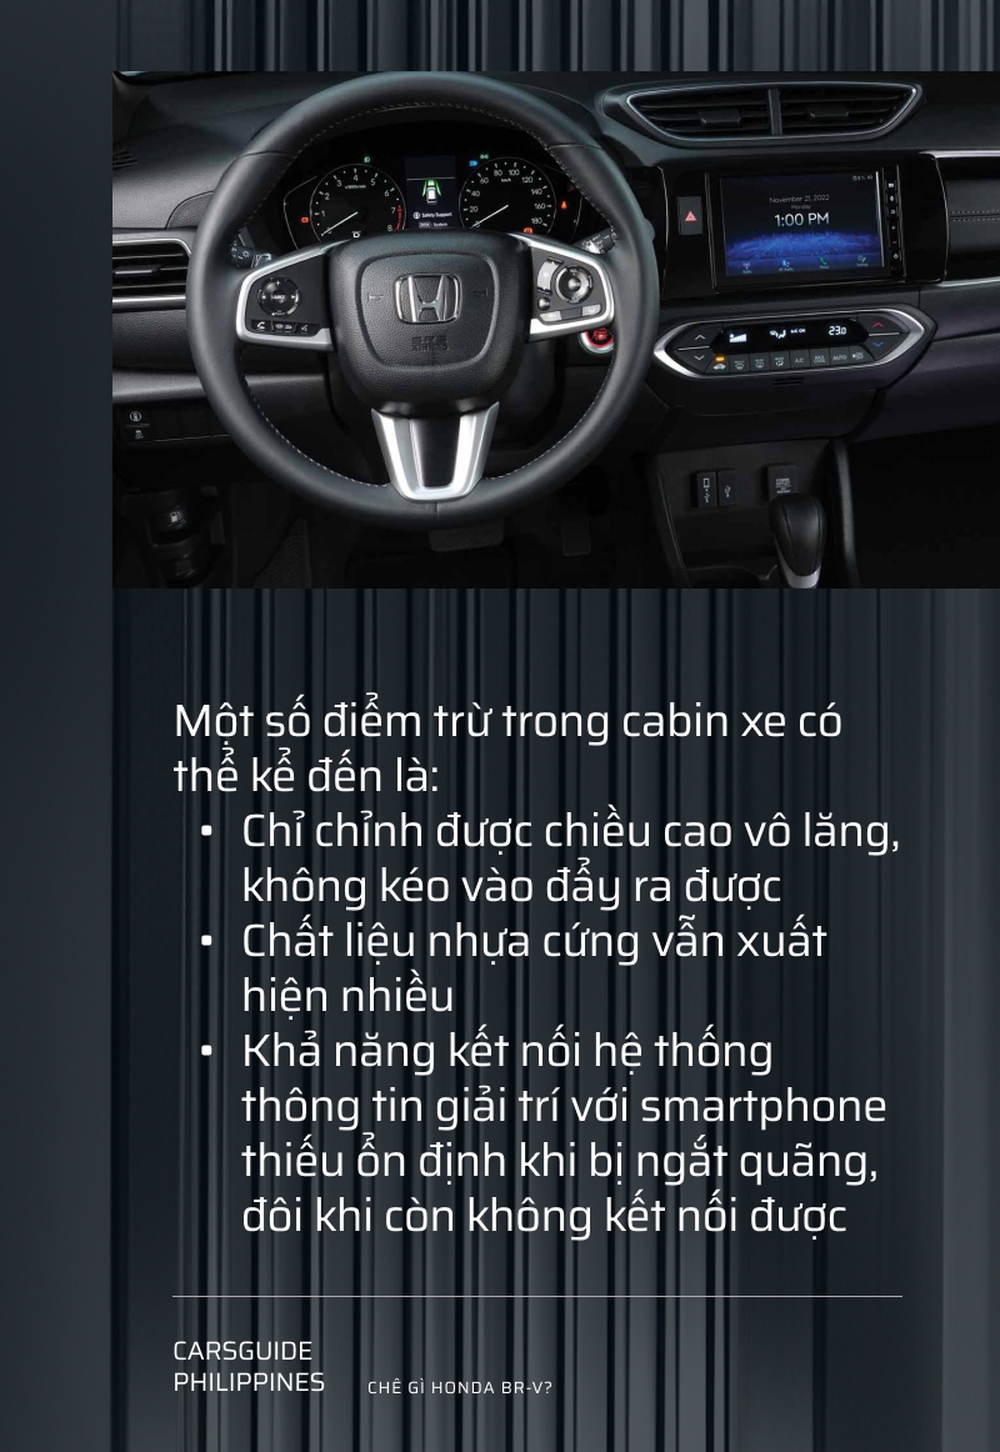 Honda BR-V 2023 sắp ra mắt Việt Nam bị báo khu vực chê những điểm nào? - Ảnh 5.